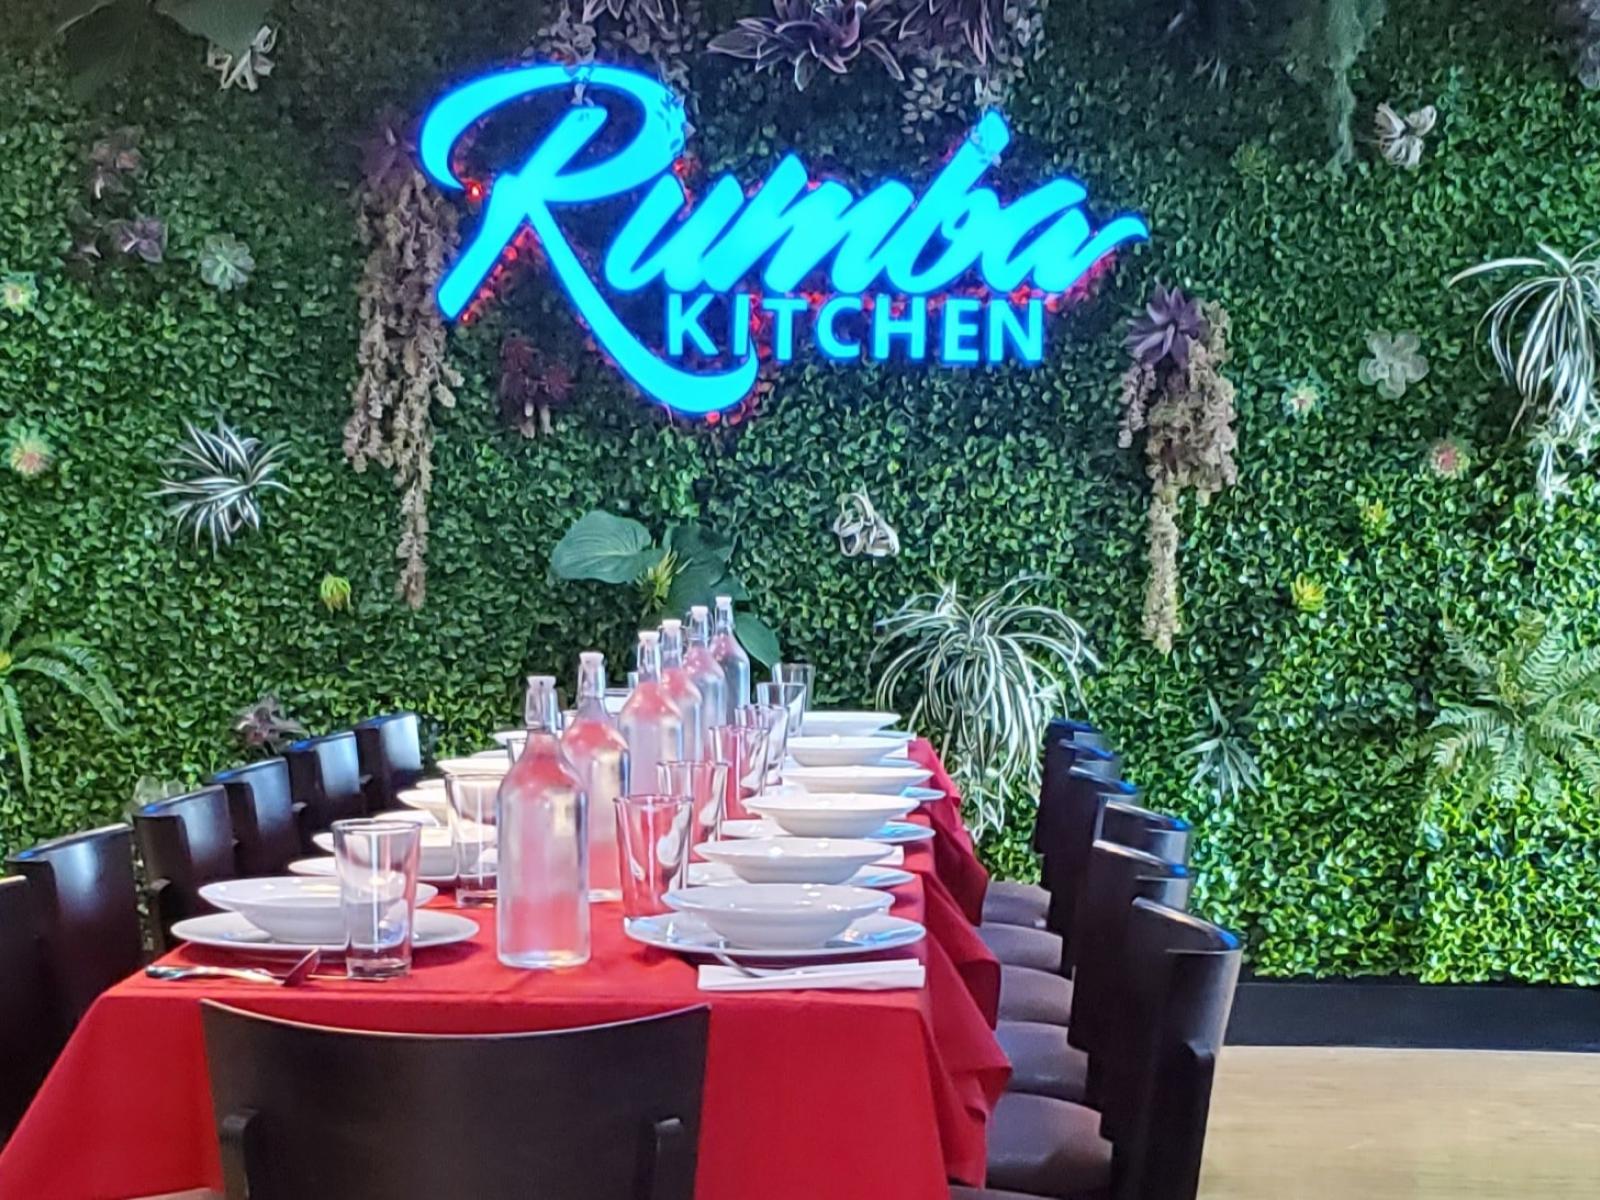 Rumba Kitchen